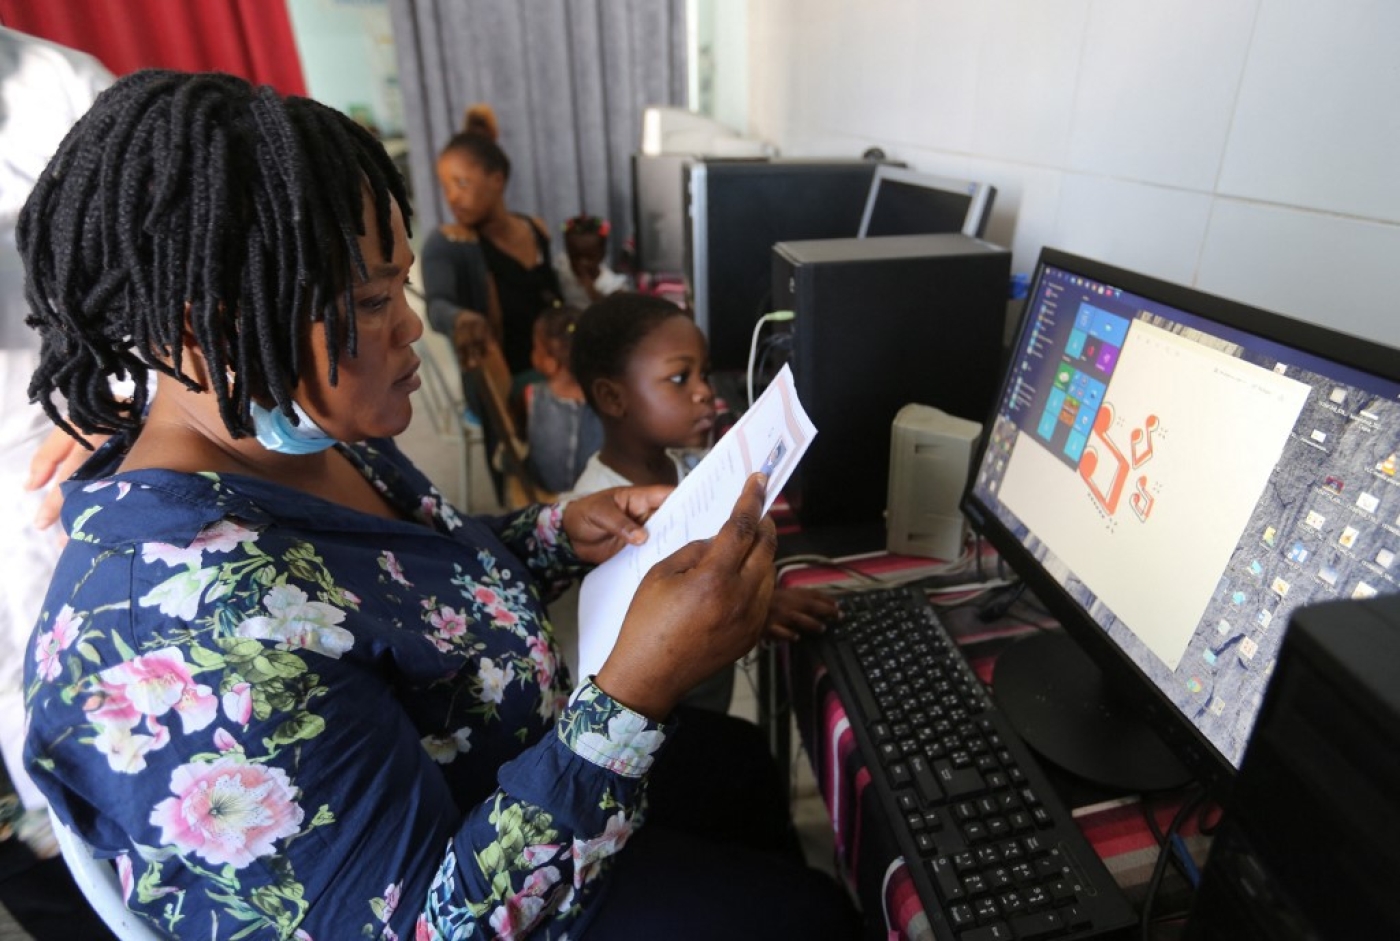 Des migrantes subsahariennes apprennent à utiliser un ordinateur dans un centre géré par l’Organisation de soutien aux migrants, dans la ville de Médenine, dans le sud de la Tunisie, le 15 juin 2021 (AFP/Fathi Nasri)